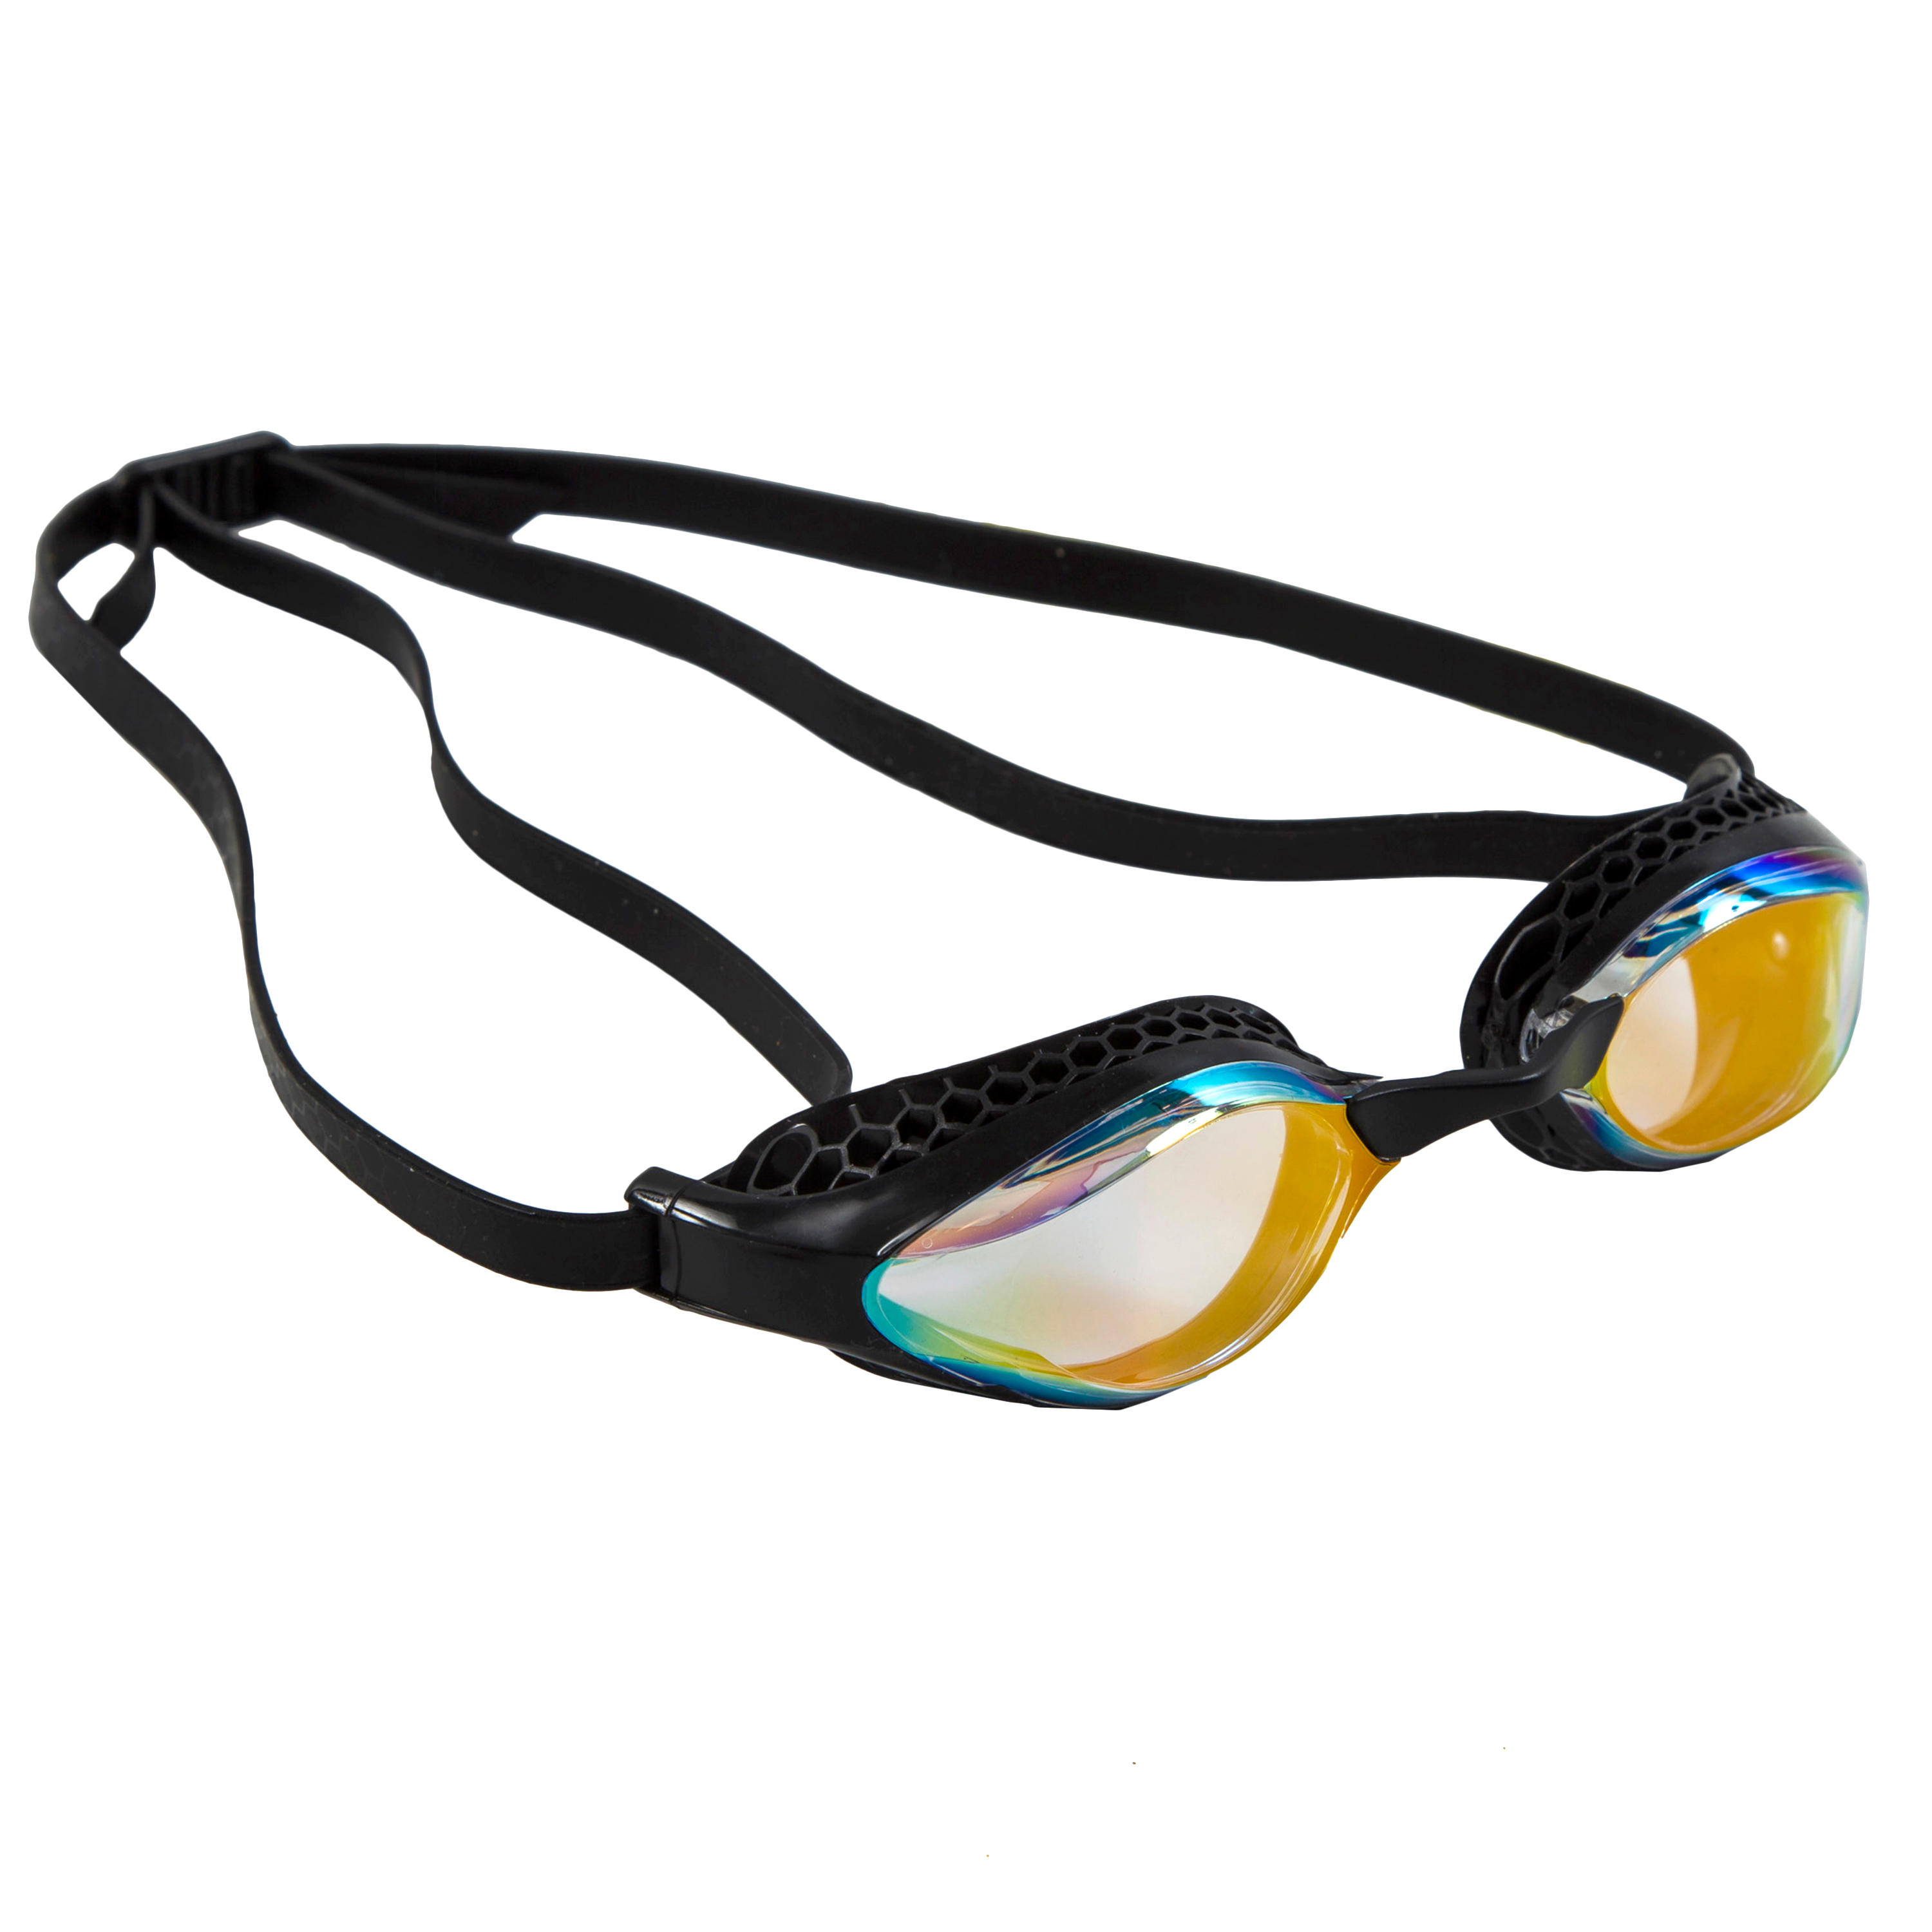 Очки для плавания Arena Airspeed зеркальные желтые/черные, черный очки для плавания с зеркалом airspeed arena черный